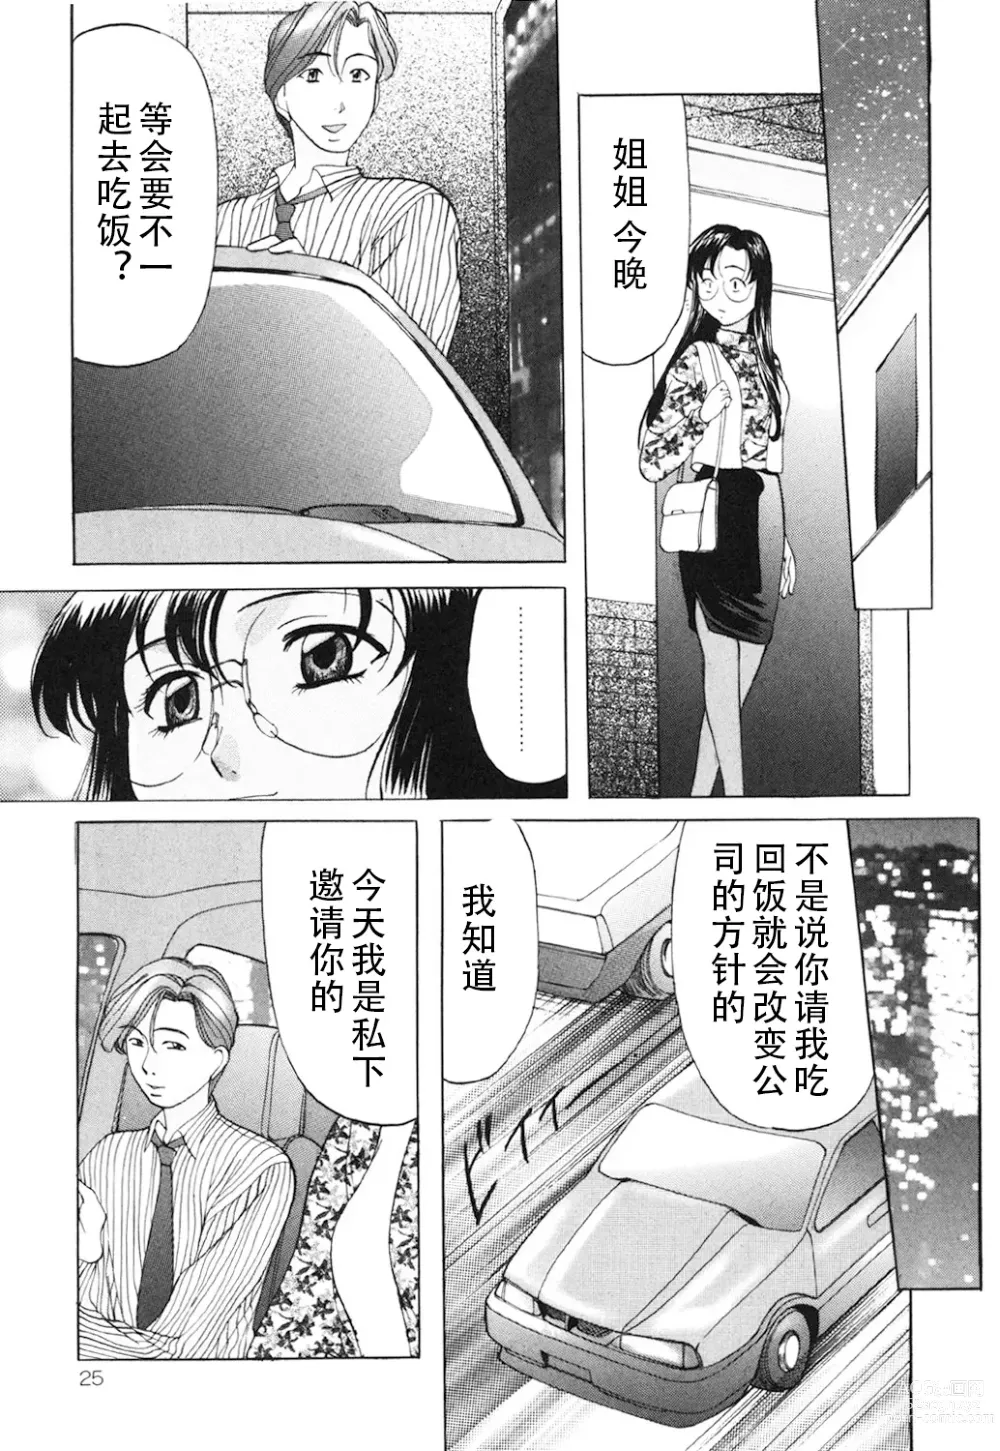 Page 24 of manga Kichiku Paradise - The Cruel Person Paradise